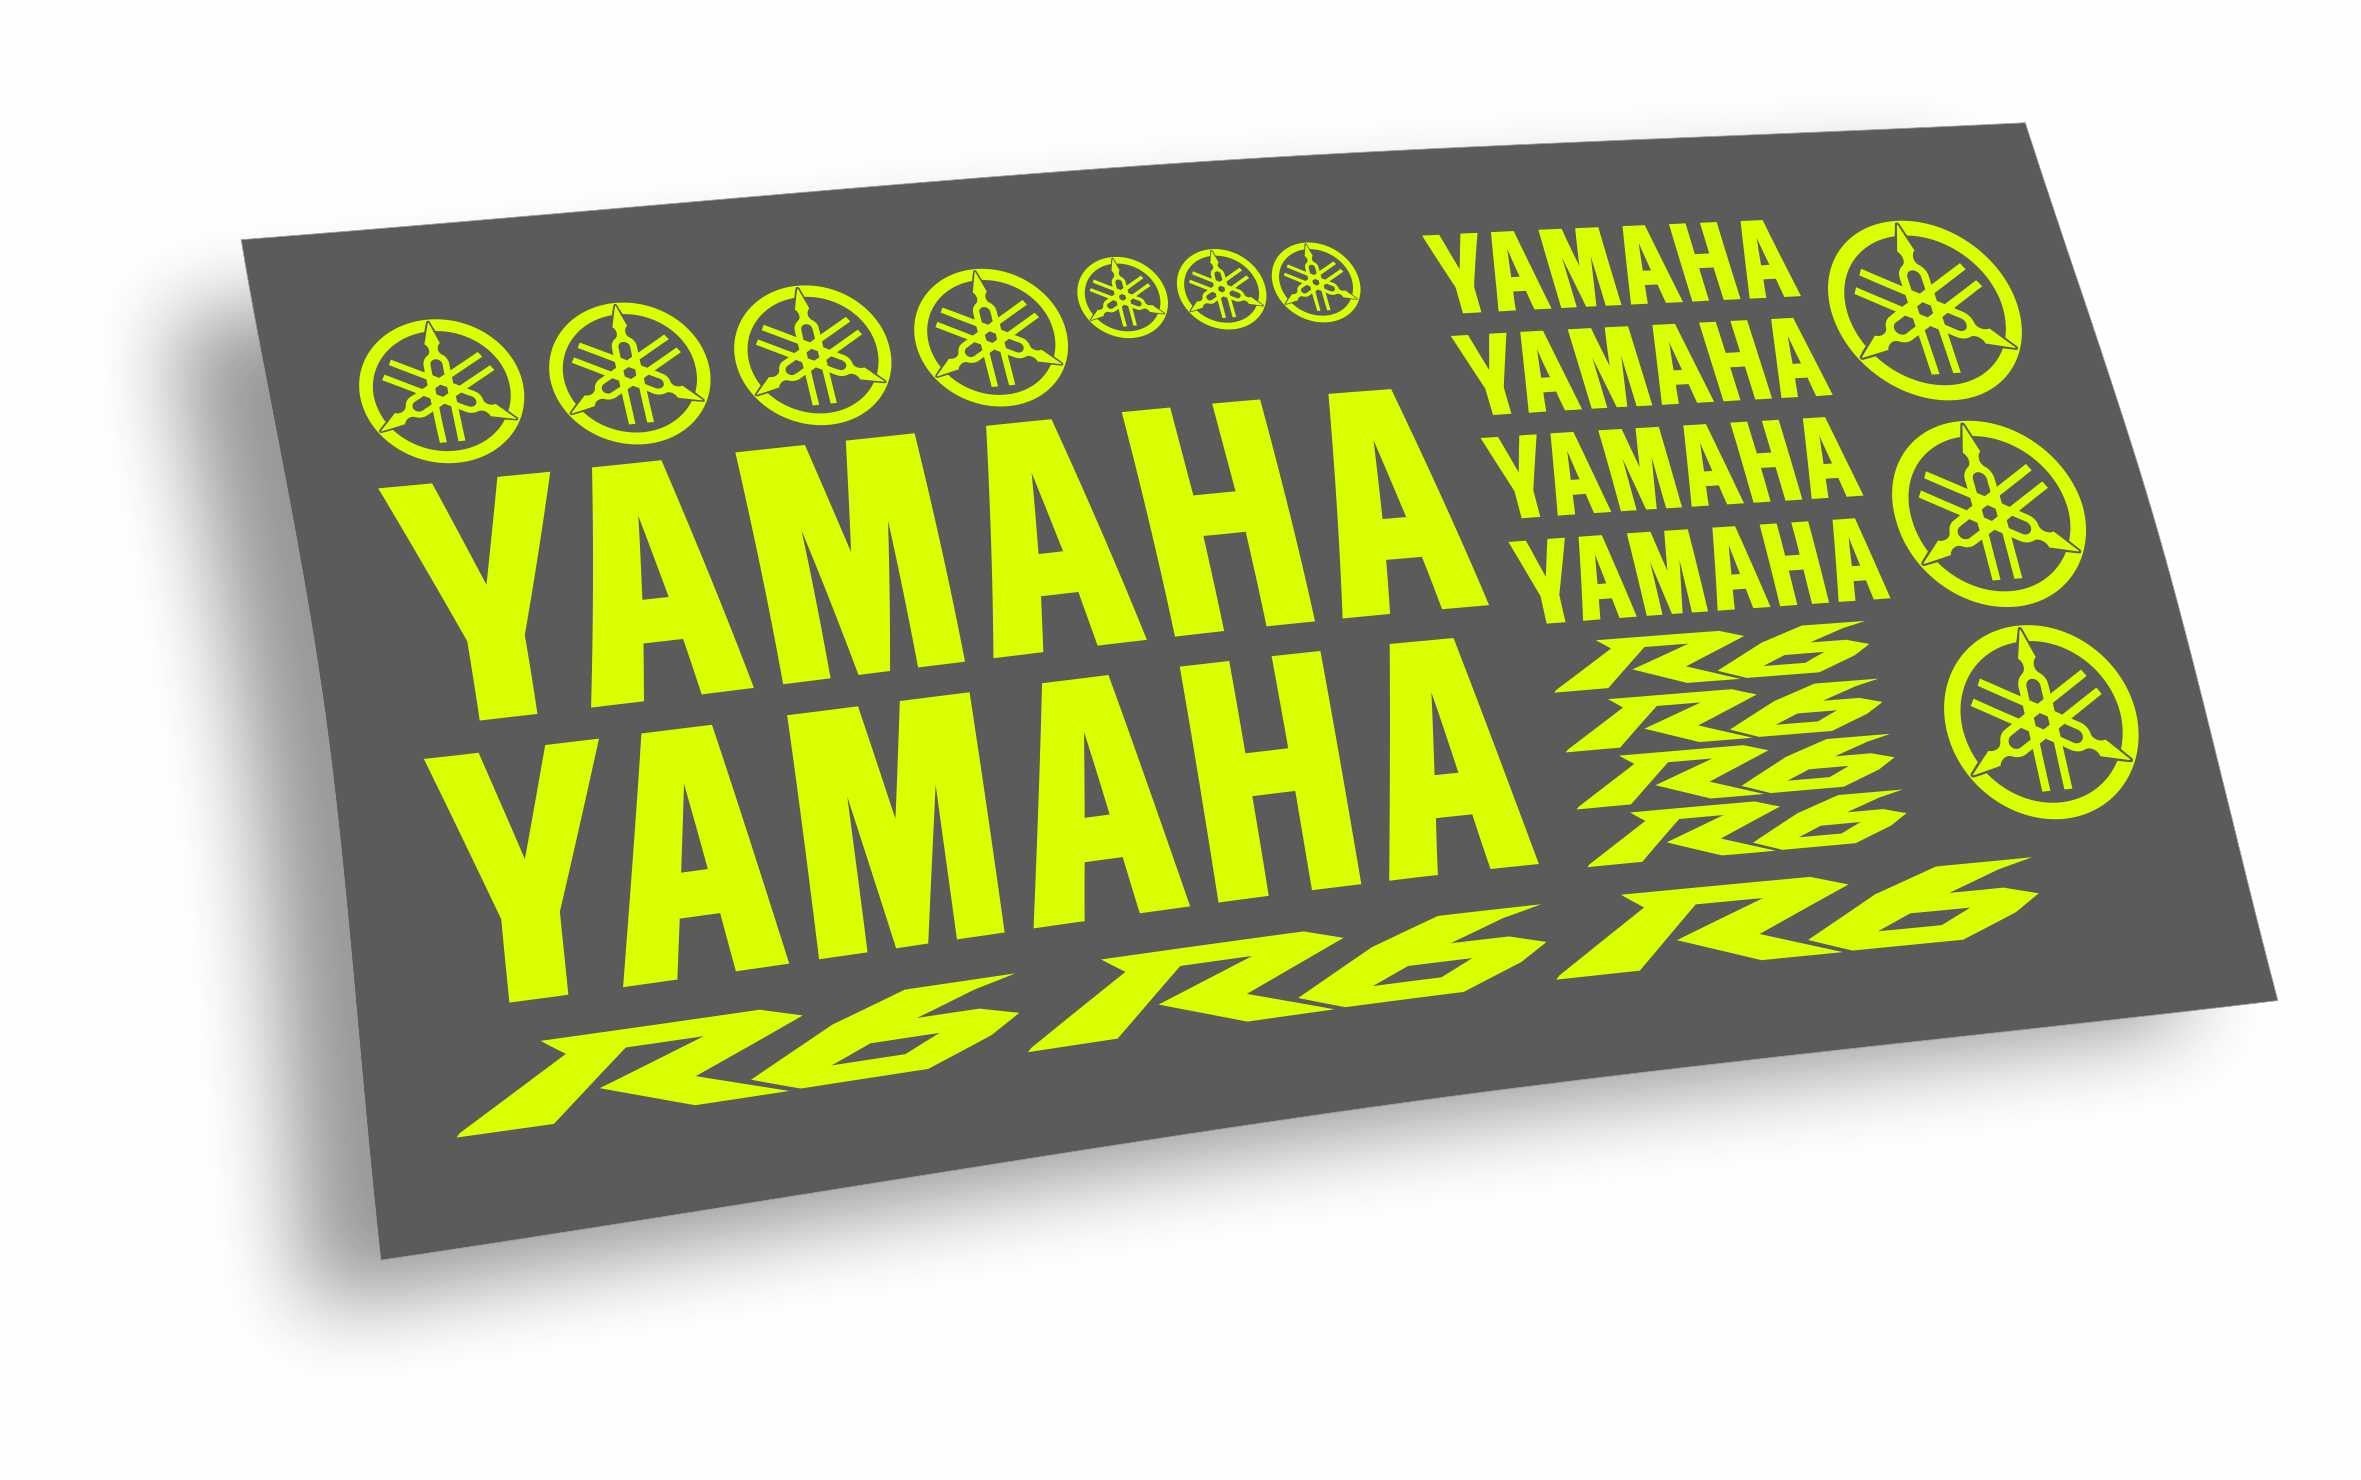 yamaha r6 Kit adesivi/stickers/decalcomanie moto – L'adesivo.com